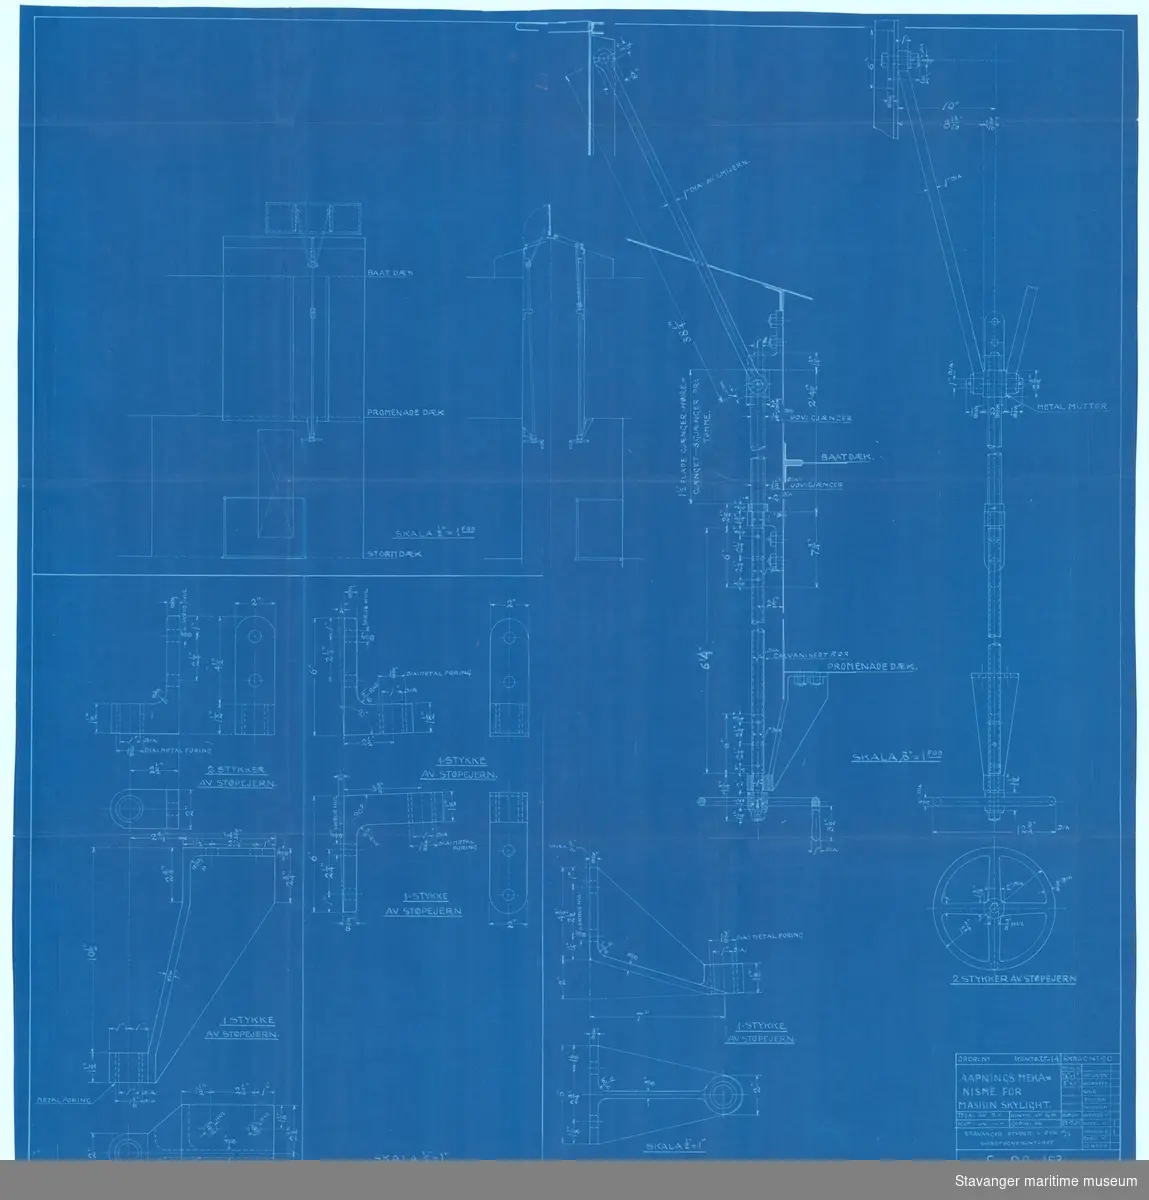 D/S ROGALAND. Åpnings mekanisme for maskin skylight.23.07.1929